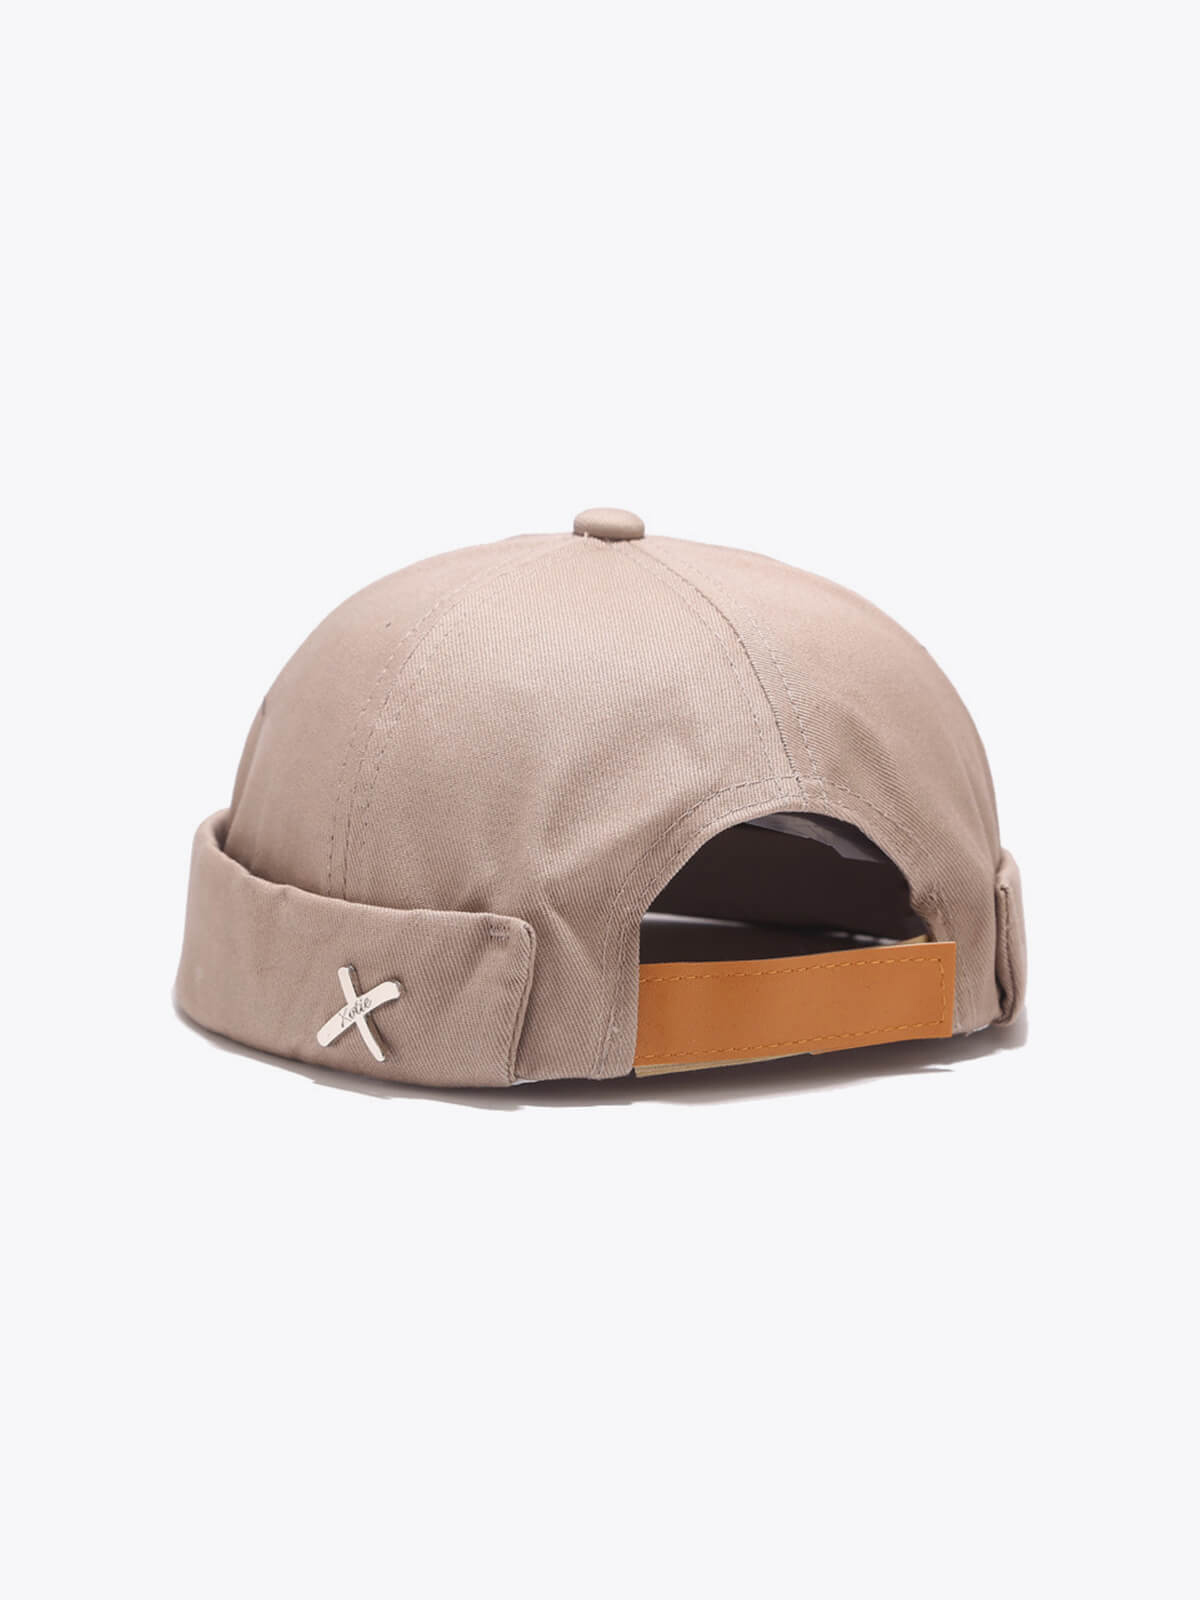 Retro X Ivory Docker Hat - Docker Hats